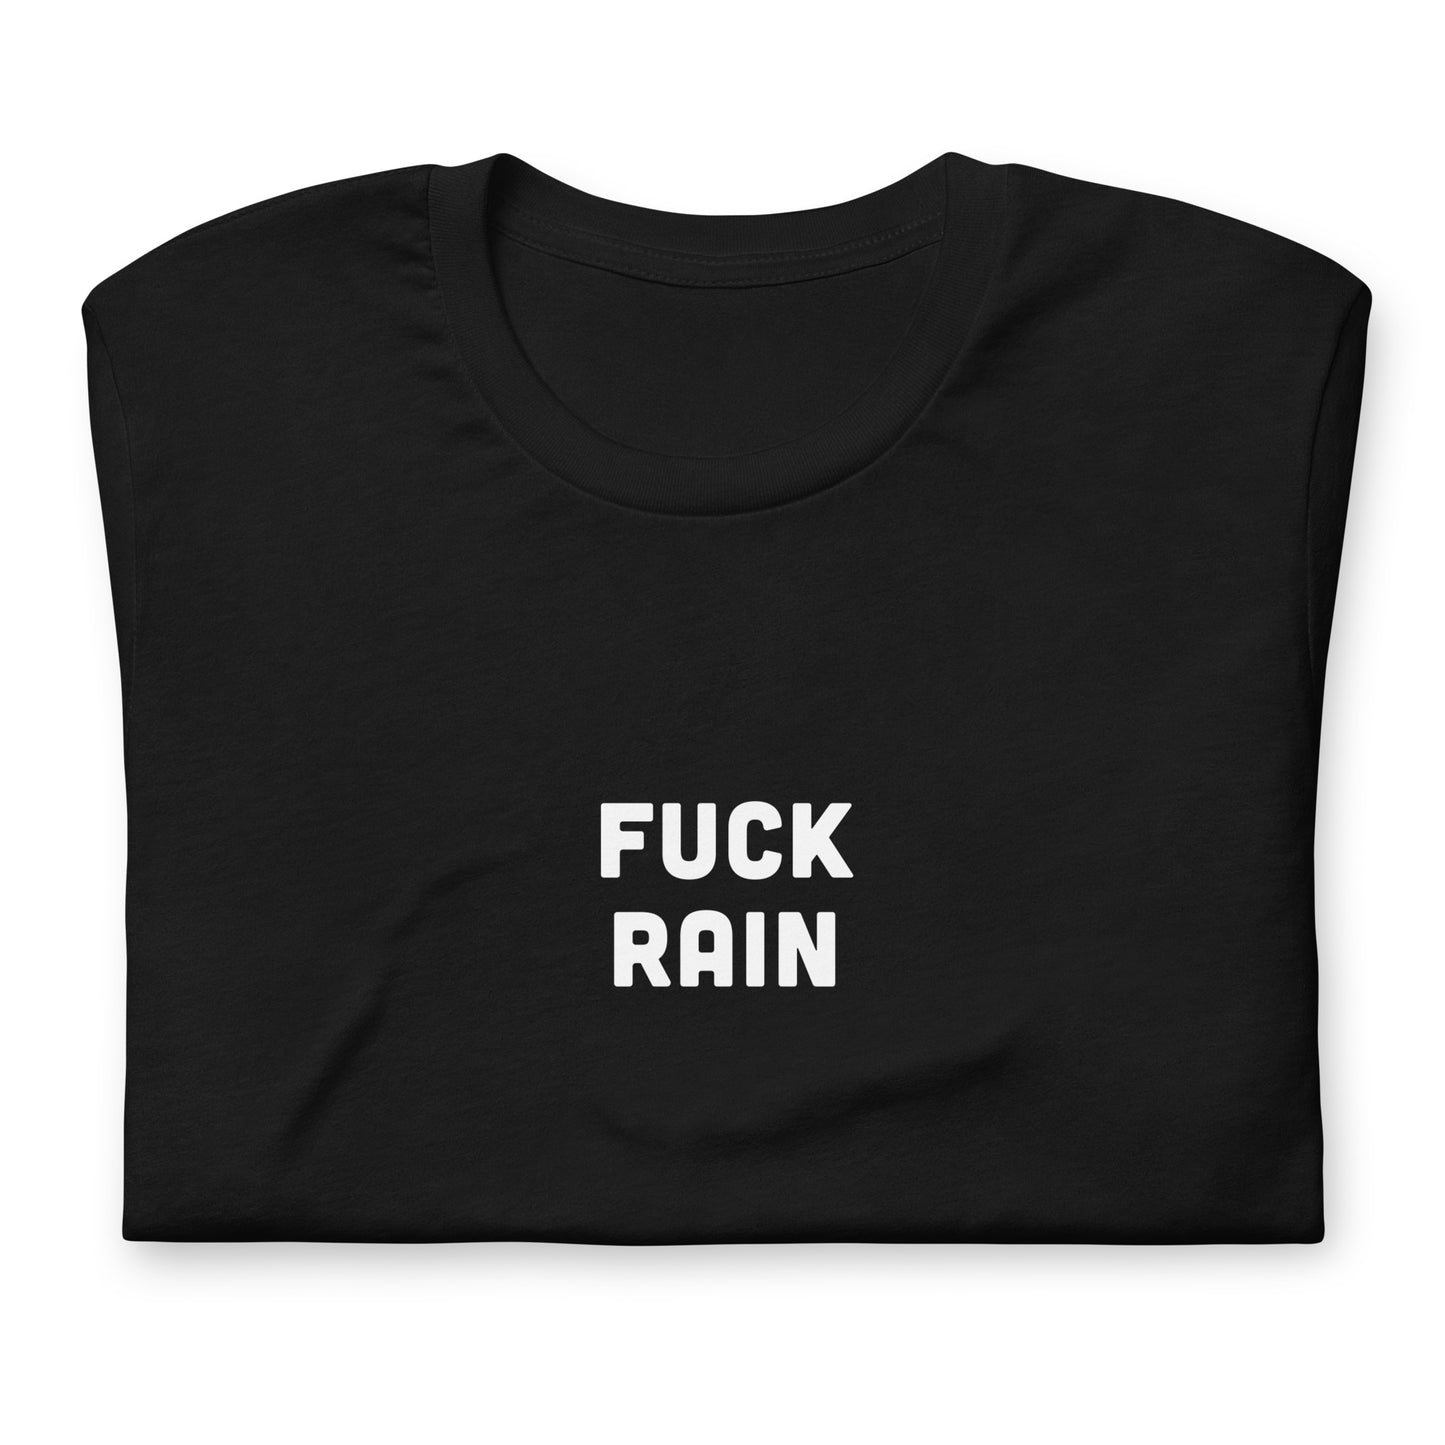 Fuck Rain T-Shirt Size M Color Black